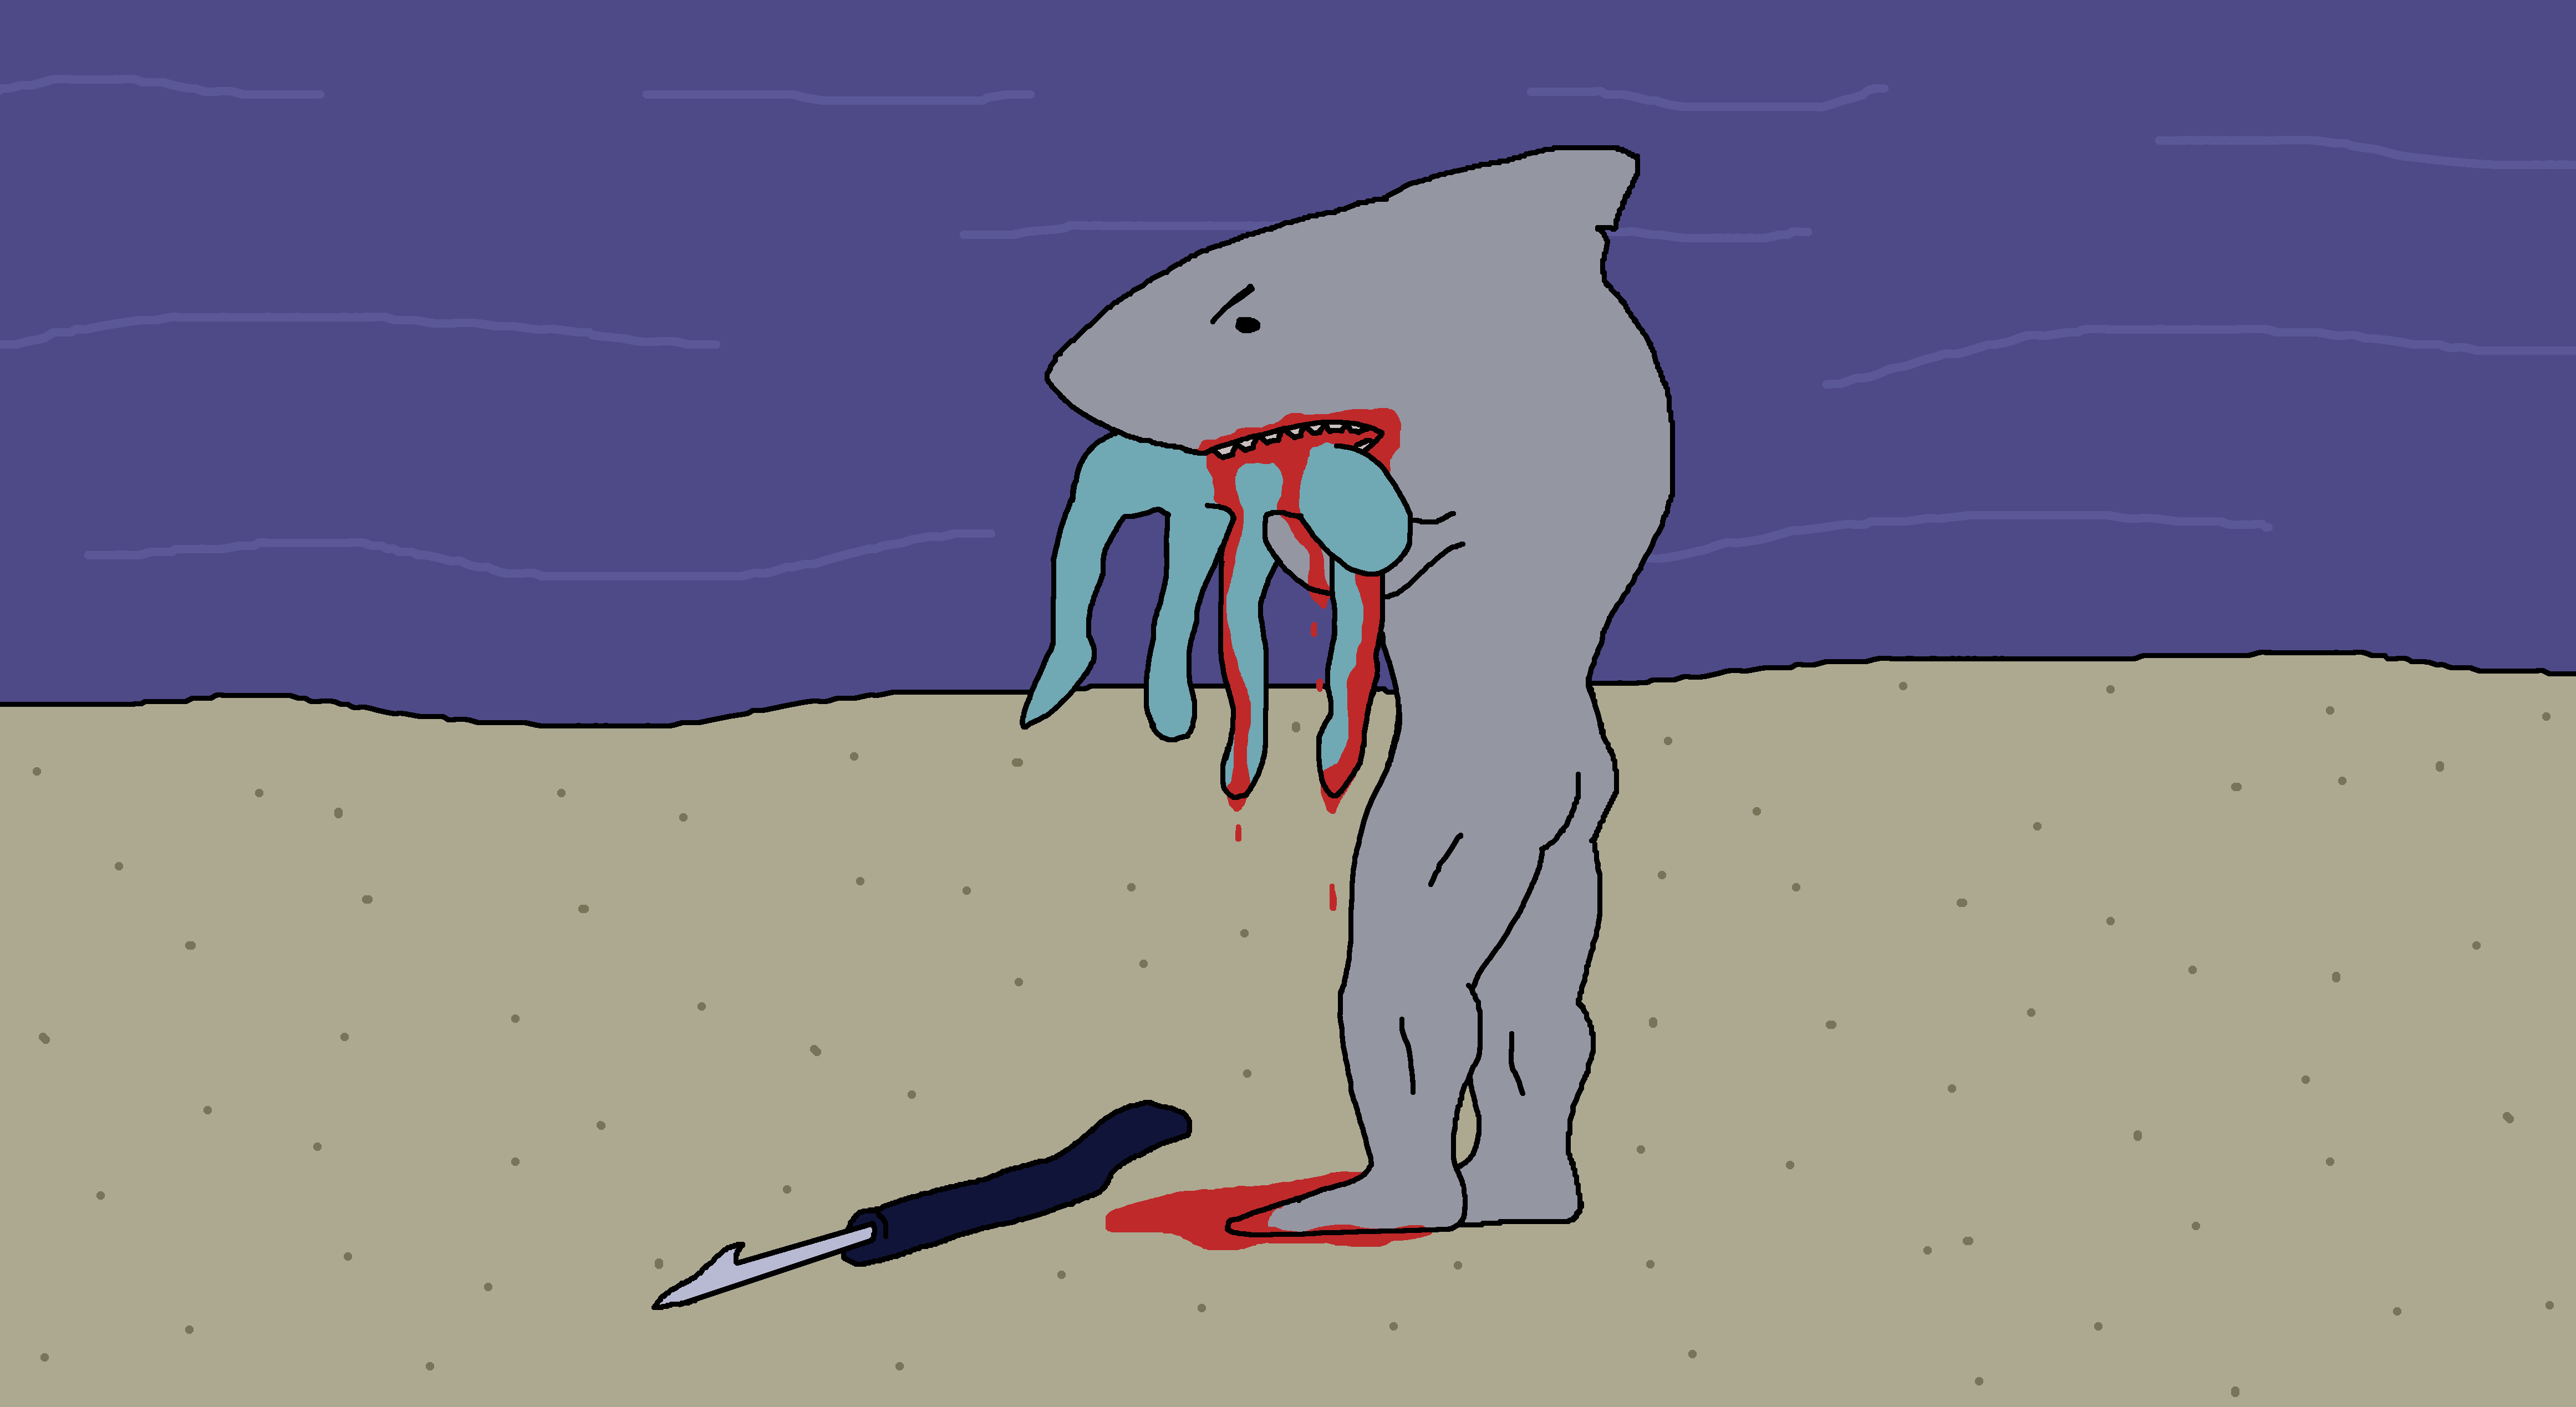 A man shark devours a blue man.